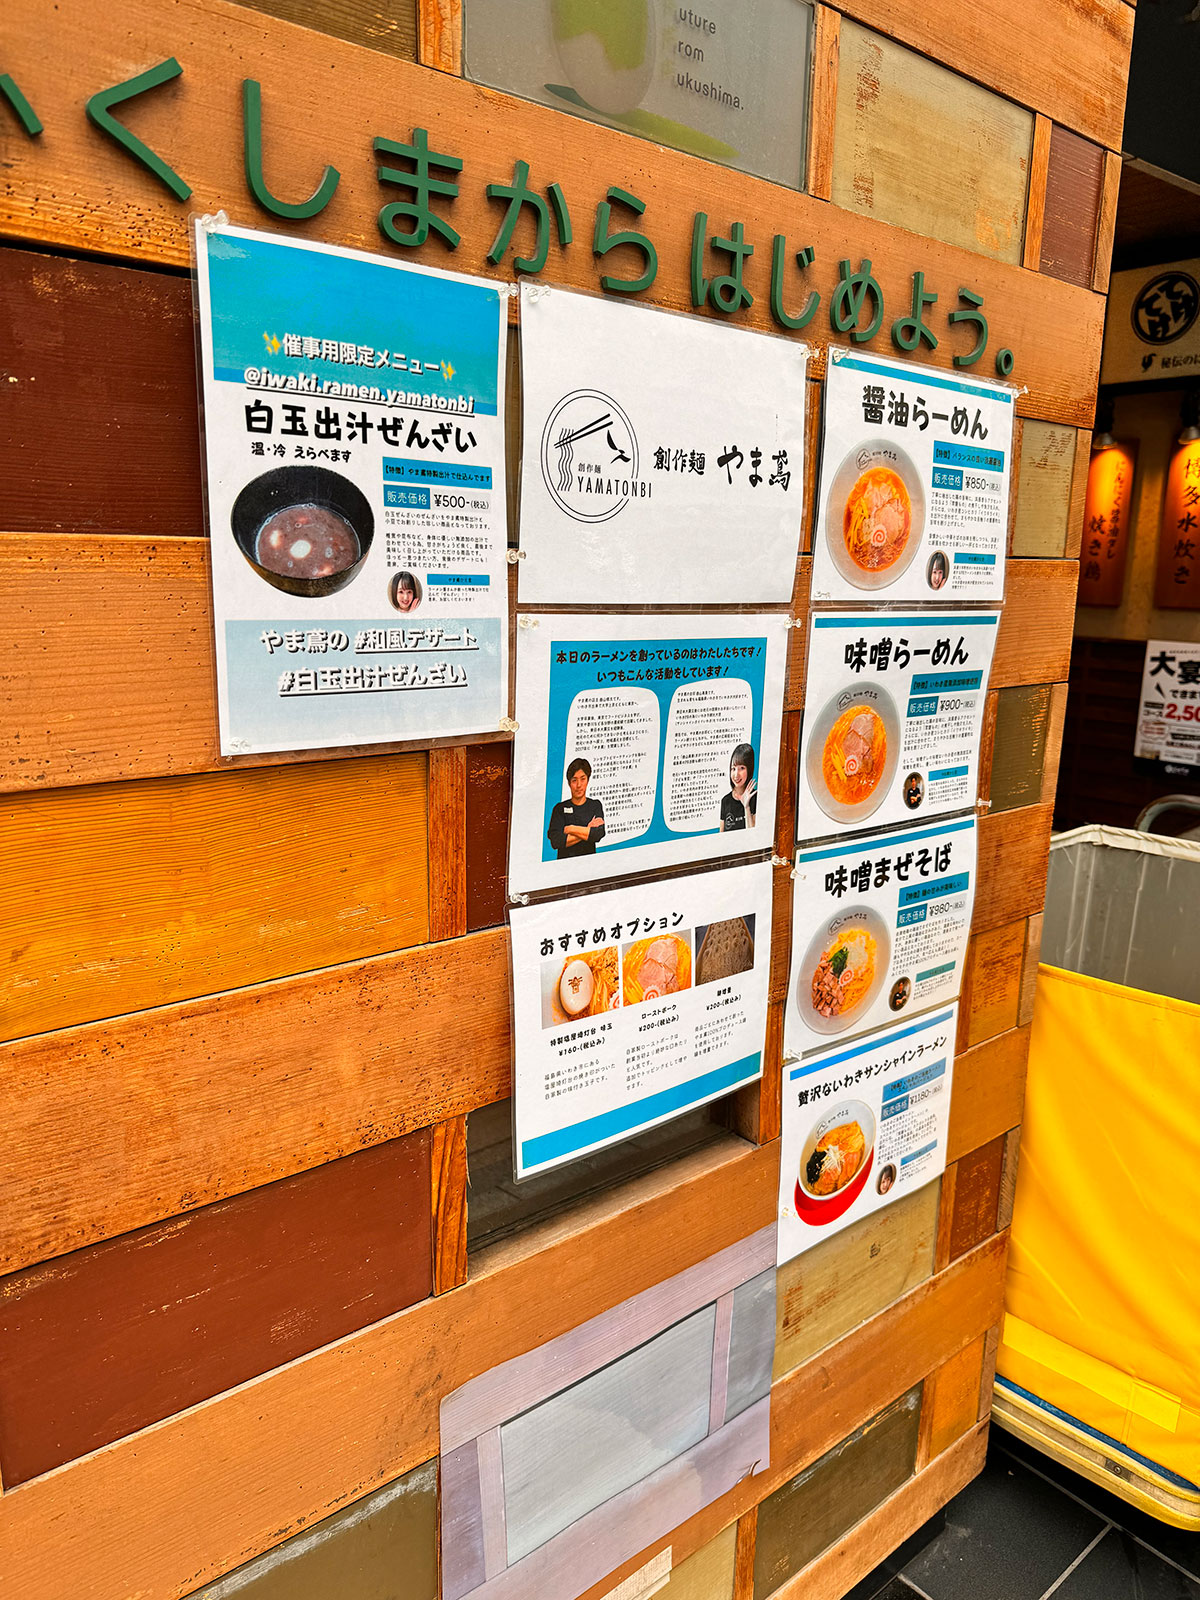 日本橋ふくしま館 MIDETTE入口前の柱に掲示された、創作麺 やま鳶によるイートインのメニュー紹介。